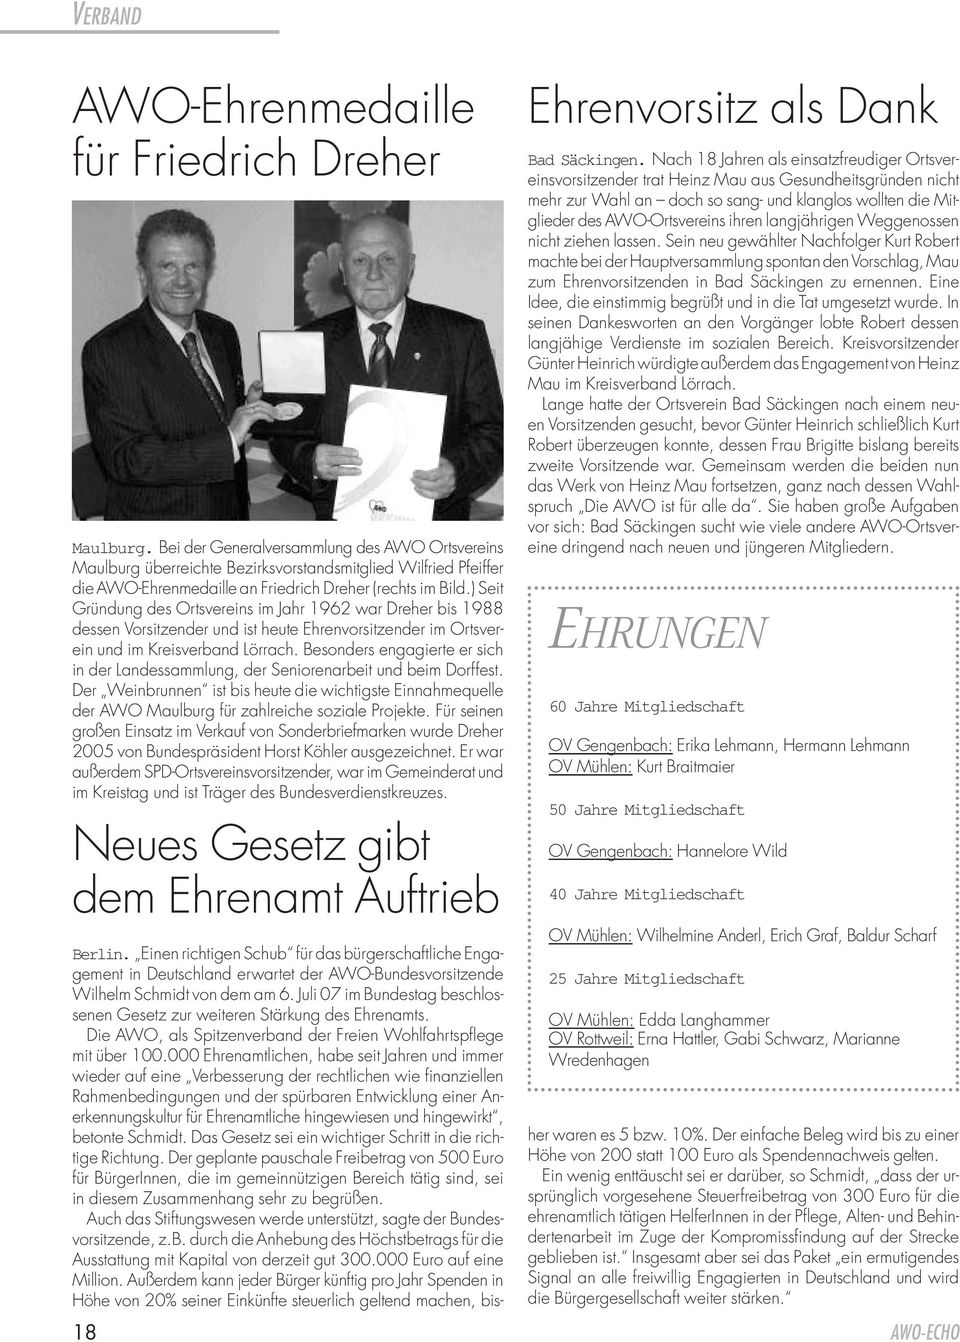 ) Seit Gründung des Ortsvereins im Jahr 1962 war Dreher bis 1988 dessen Vorsitzender und ist heute Ehrenvorsitzender im Ortsverein und im Kreisverband Lörrach.